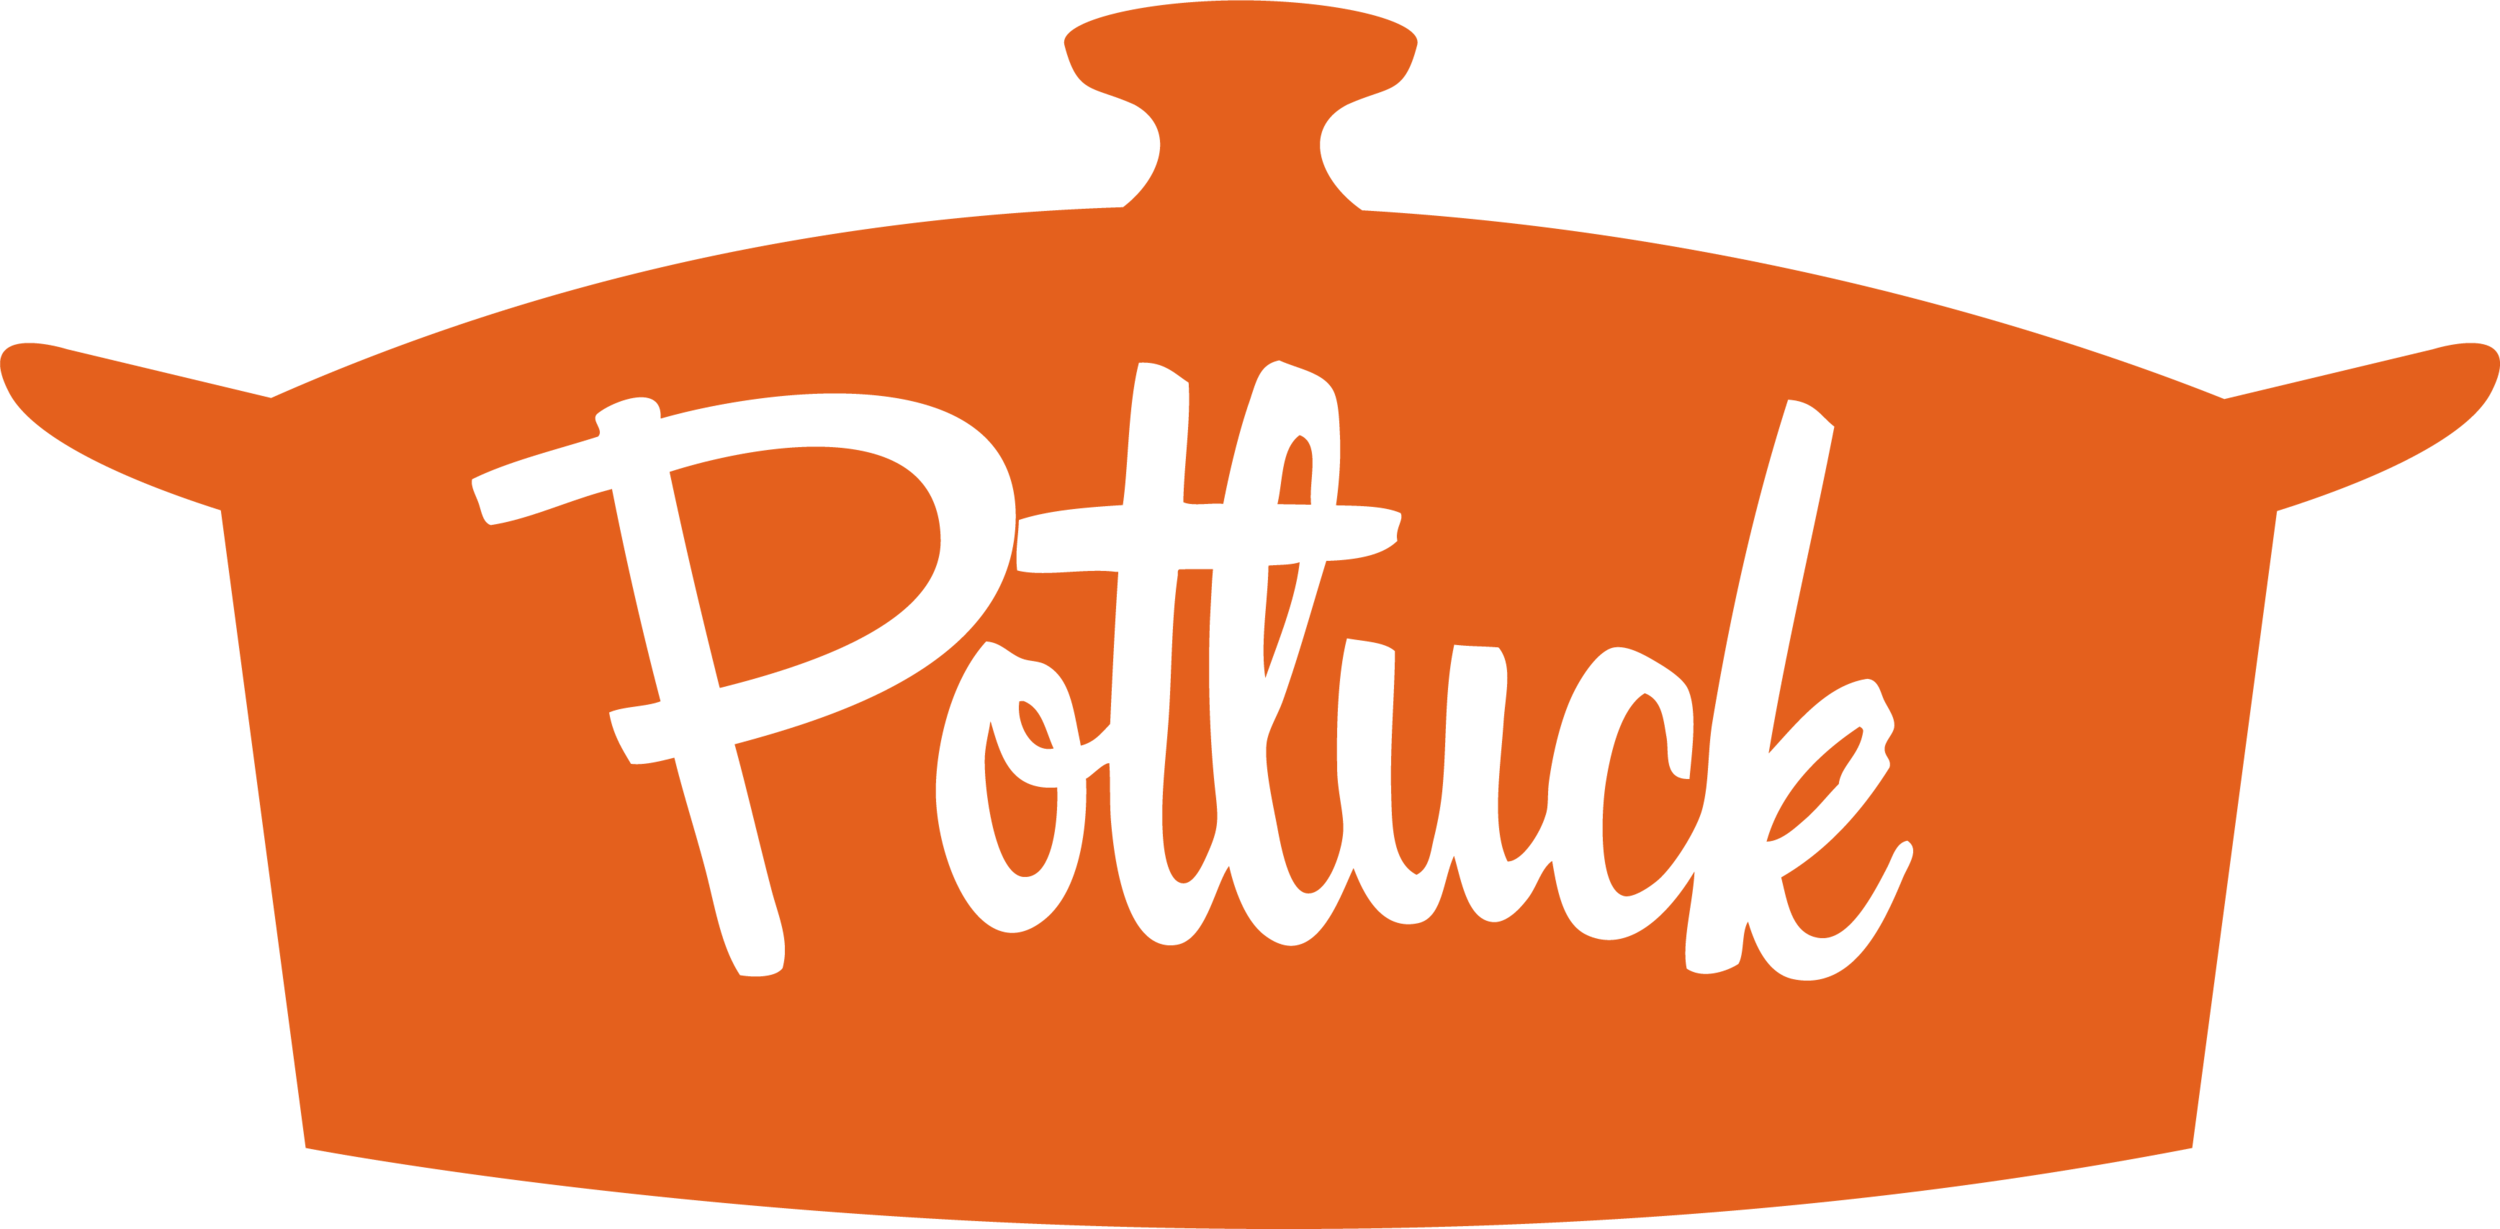 Potluck - Christmas theme